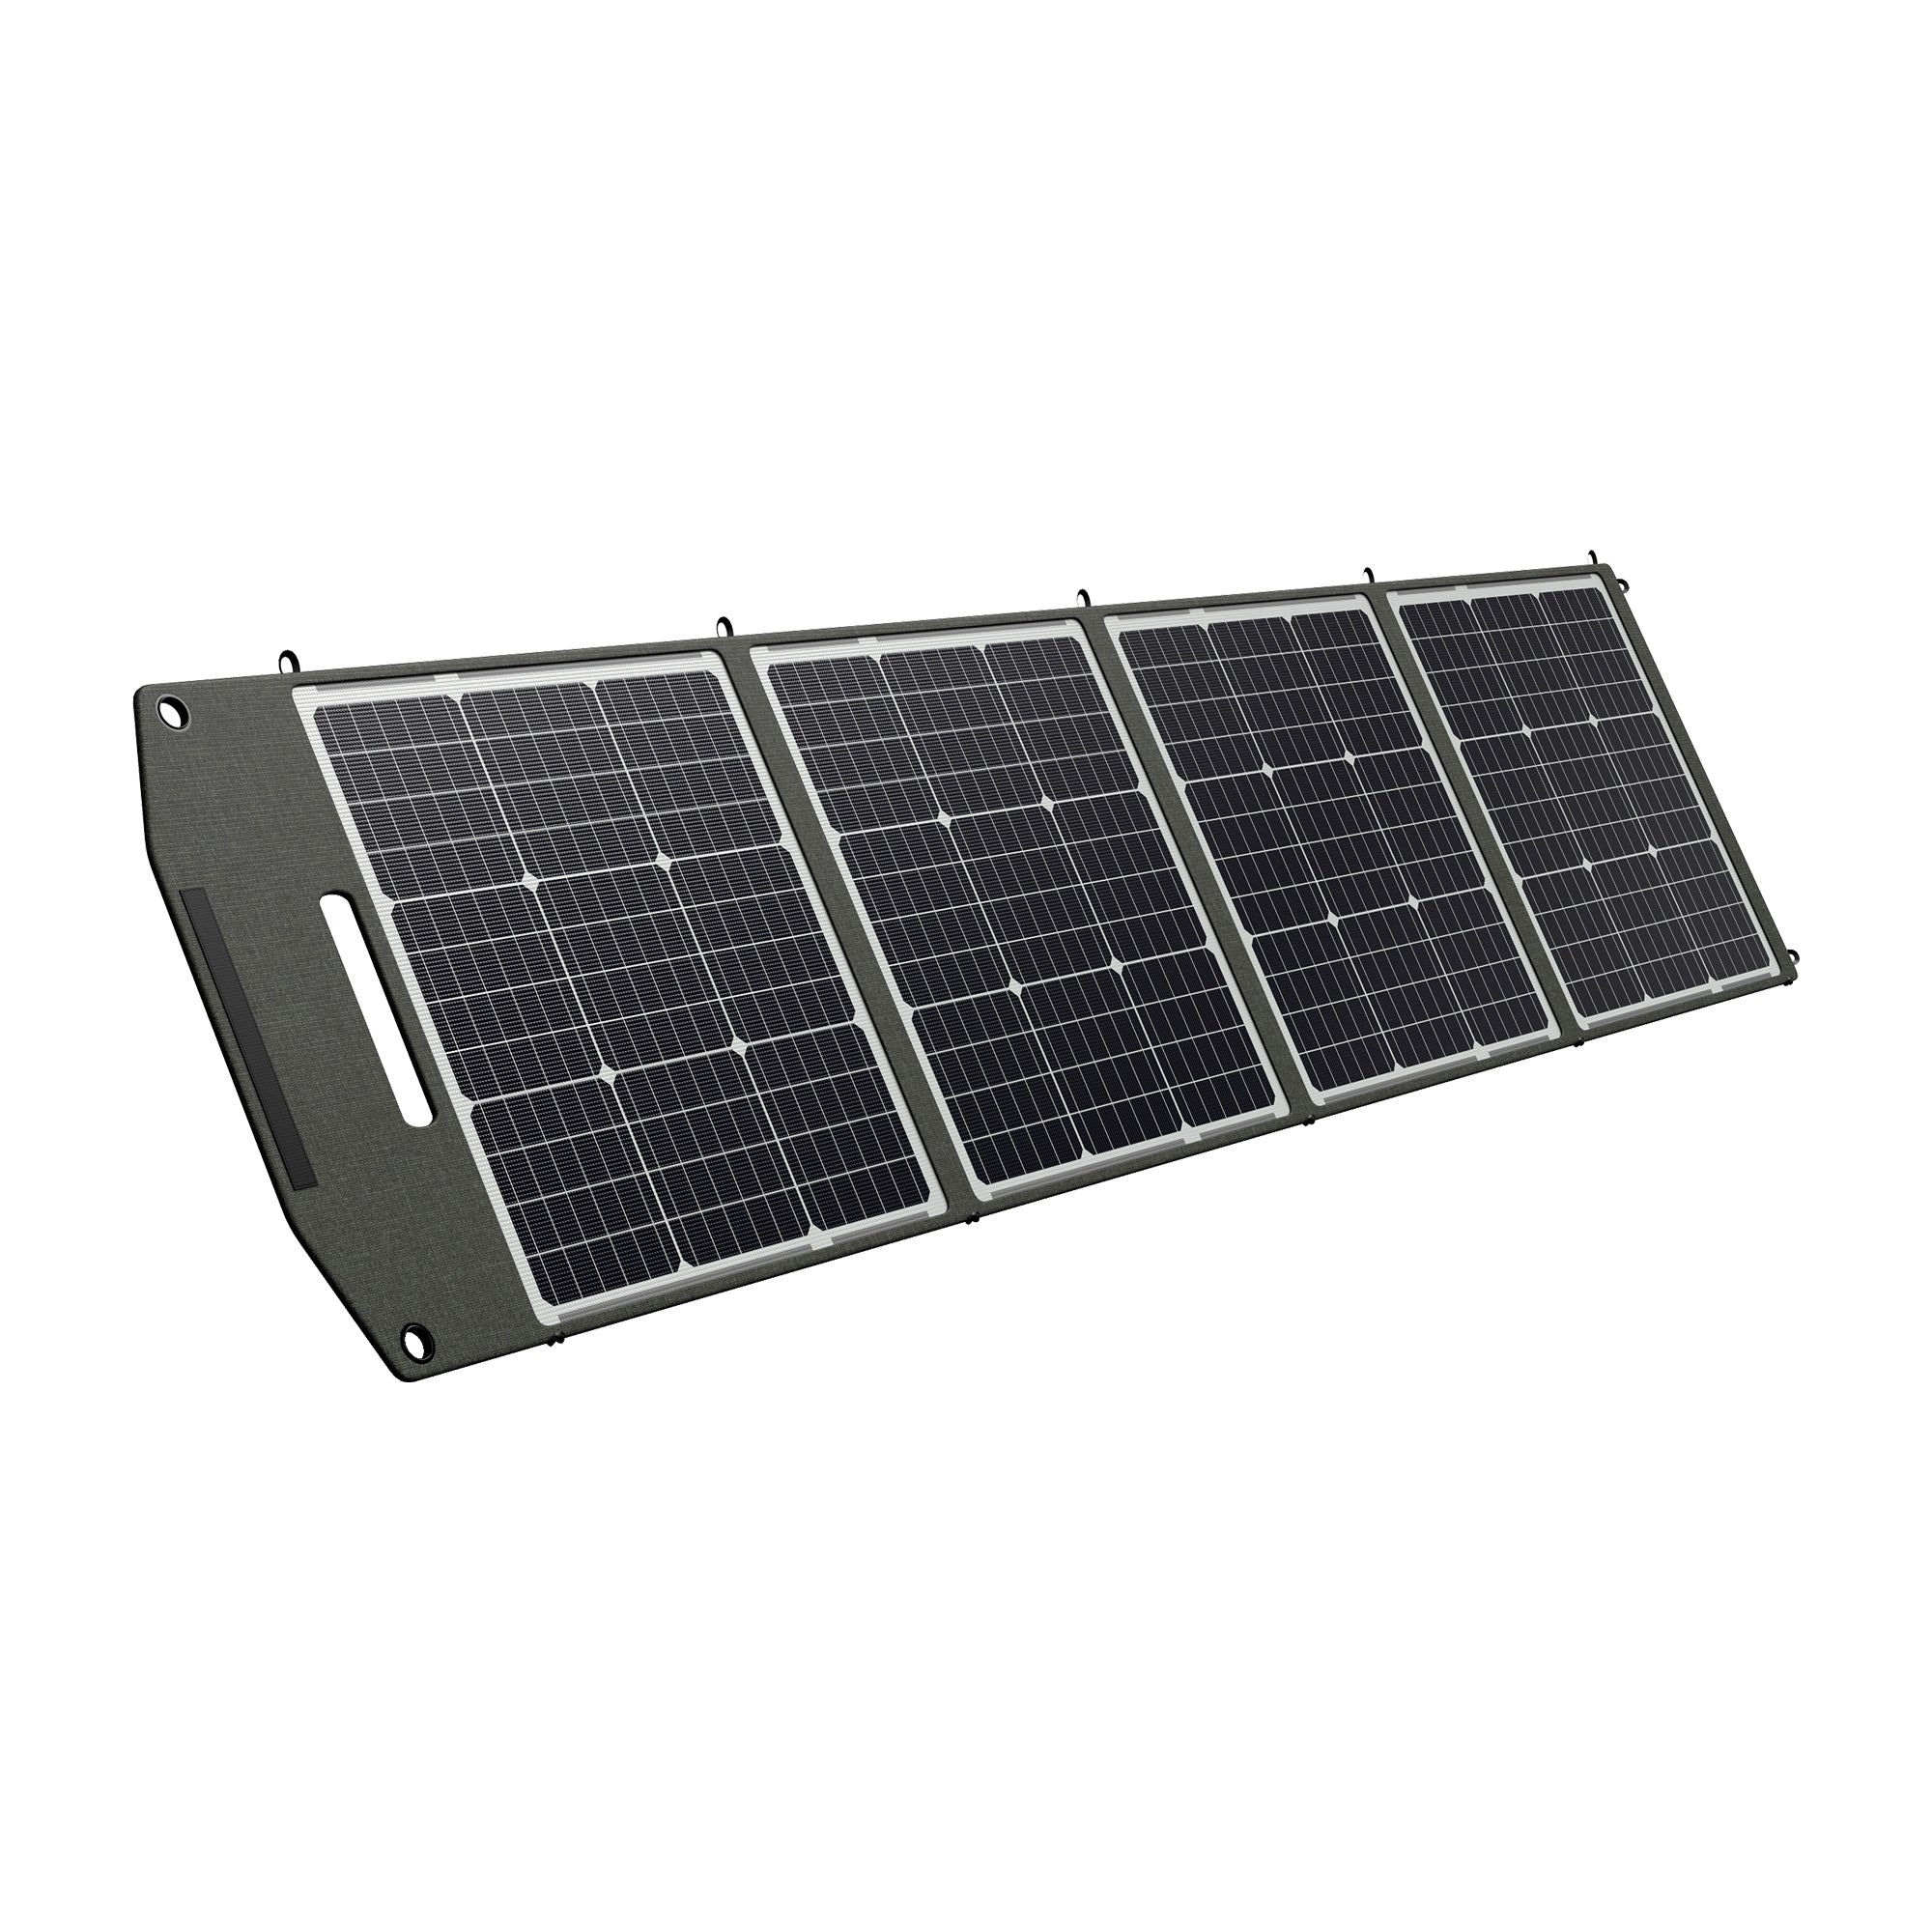 DBS200S Tragbares Solarpanel für Kraftwerk | 200W